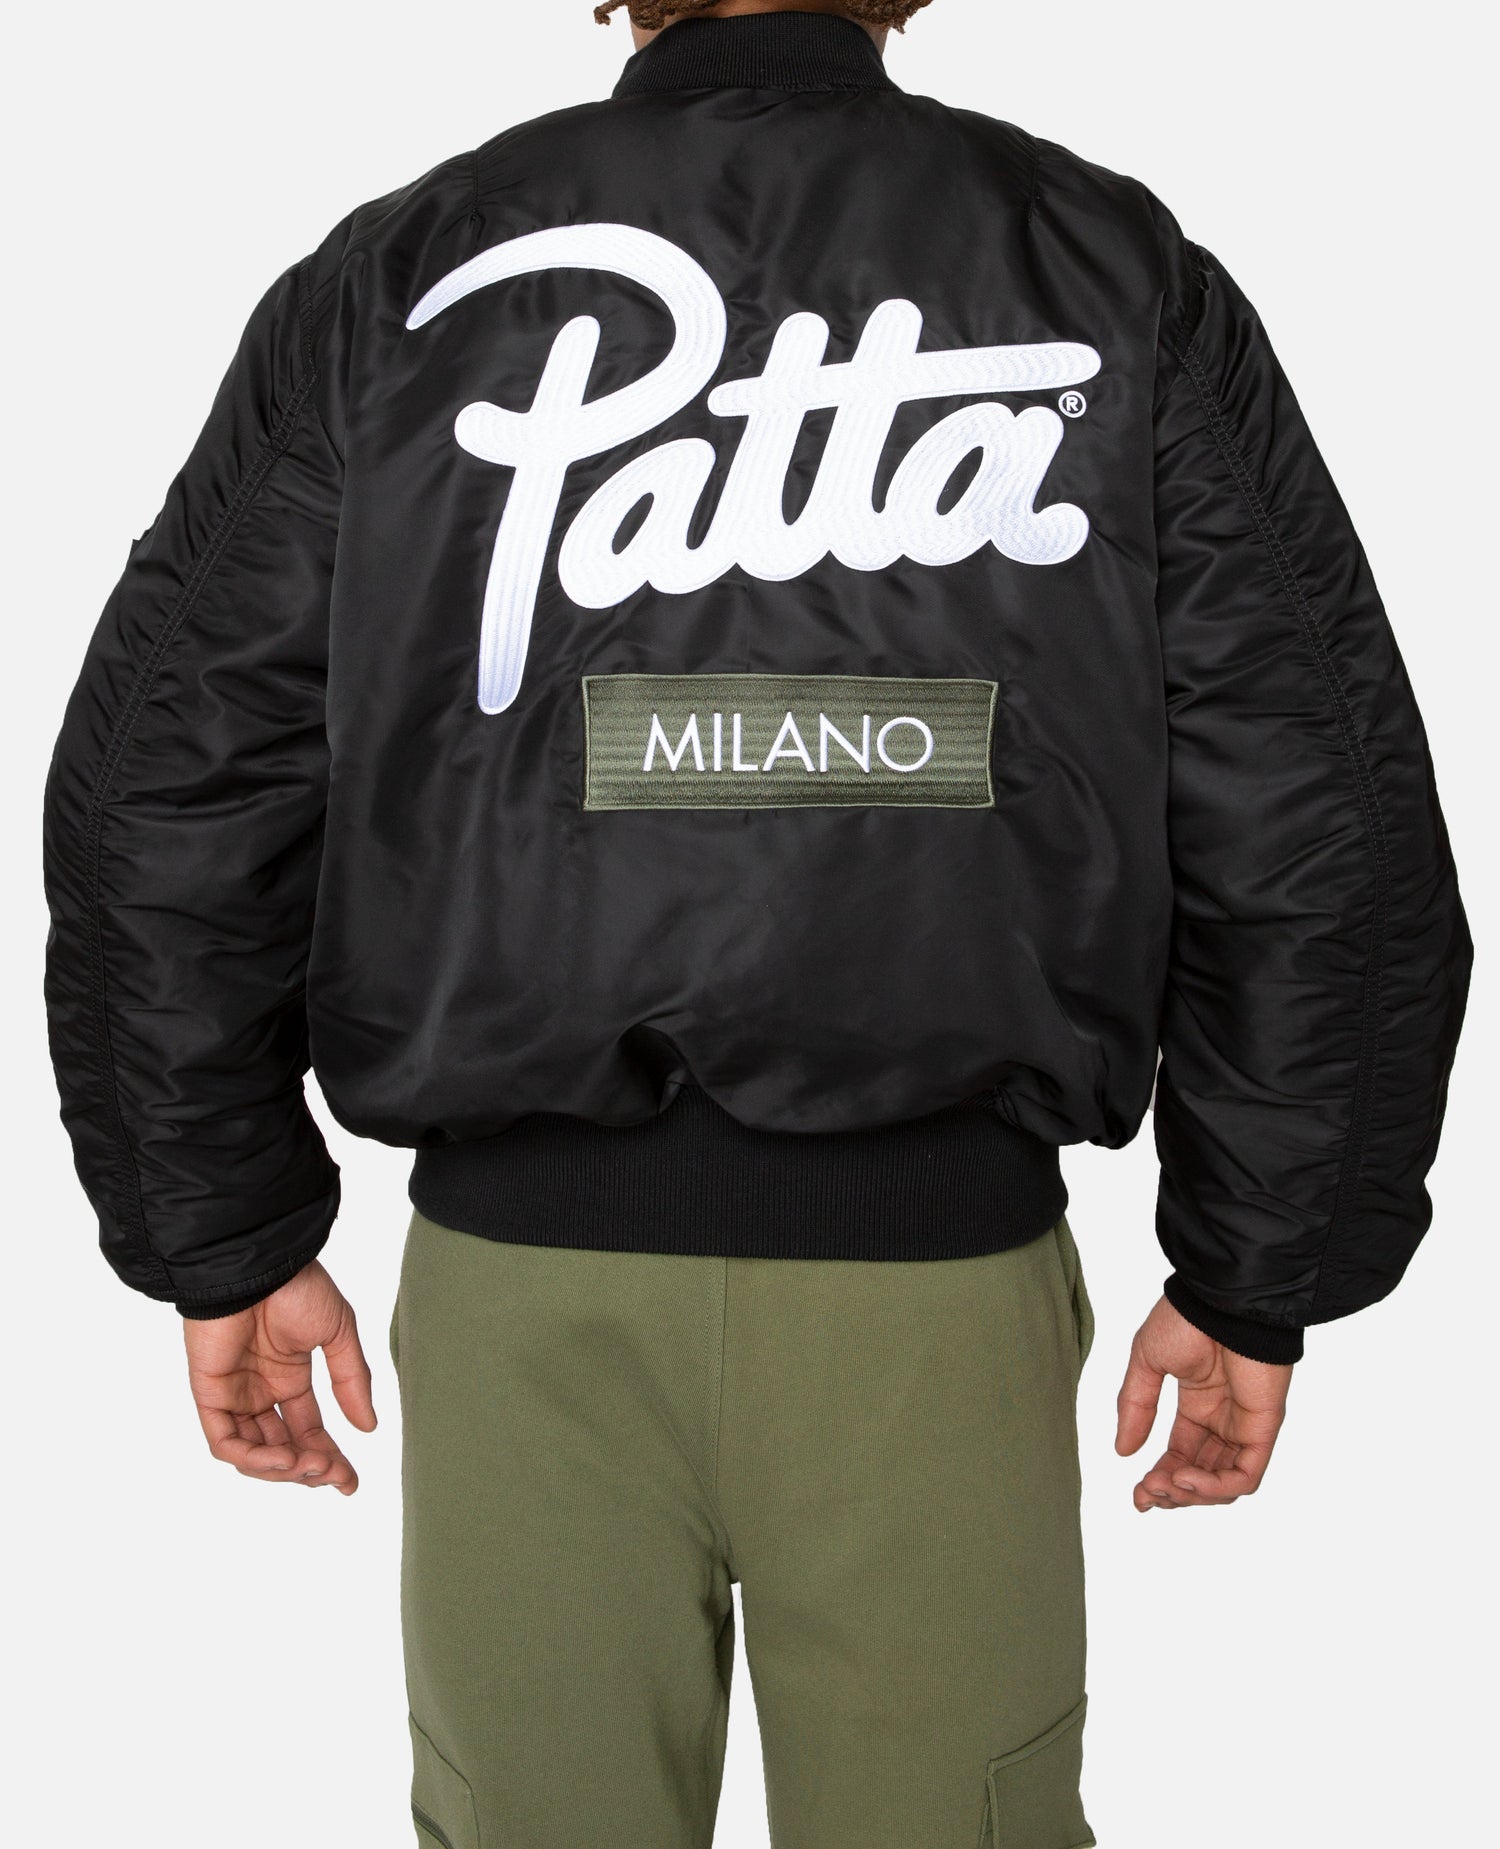 Esclusiva del negozio: Giacca Patta x Alpha Industries MA-1 Milano (nero/salvia)